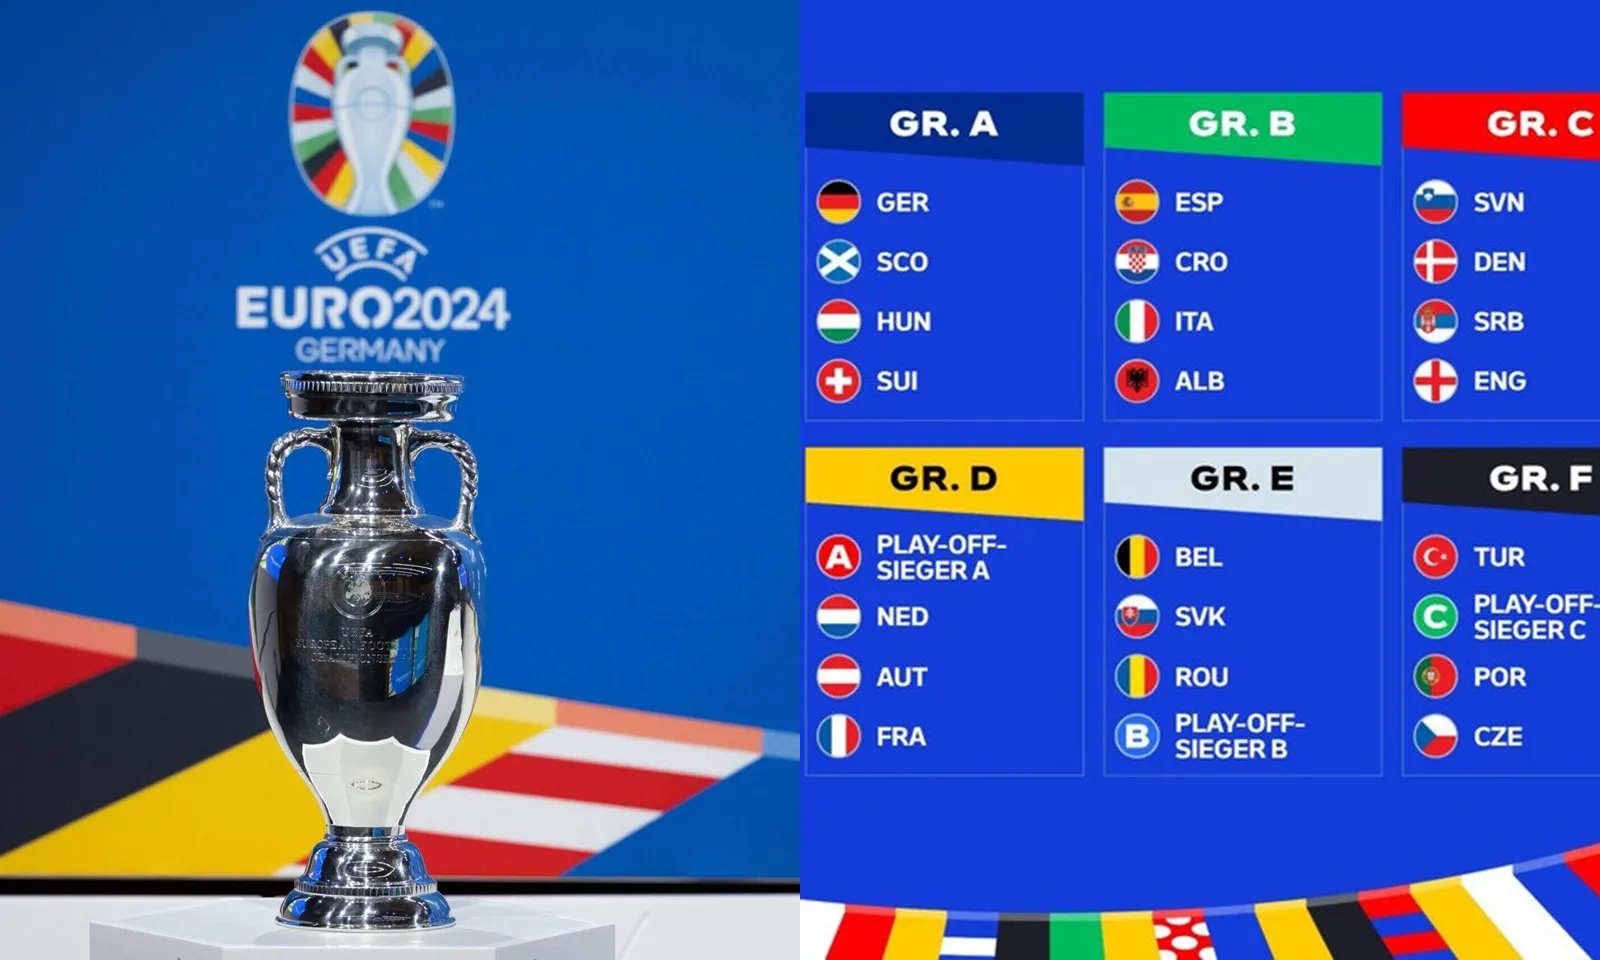 Thể thức thi đấu của EURO 2024 như thế nào? Đội vô địch được thưởng bao nhiêu?